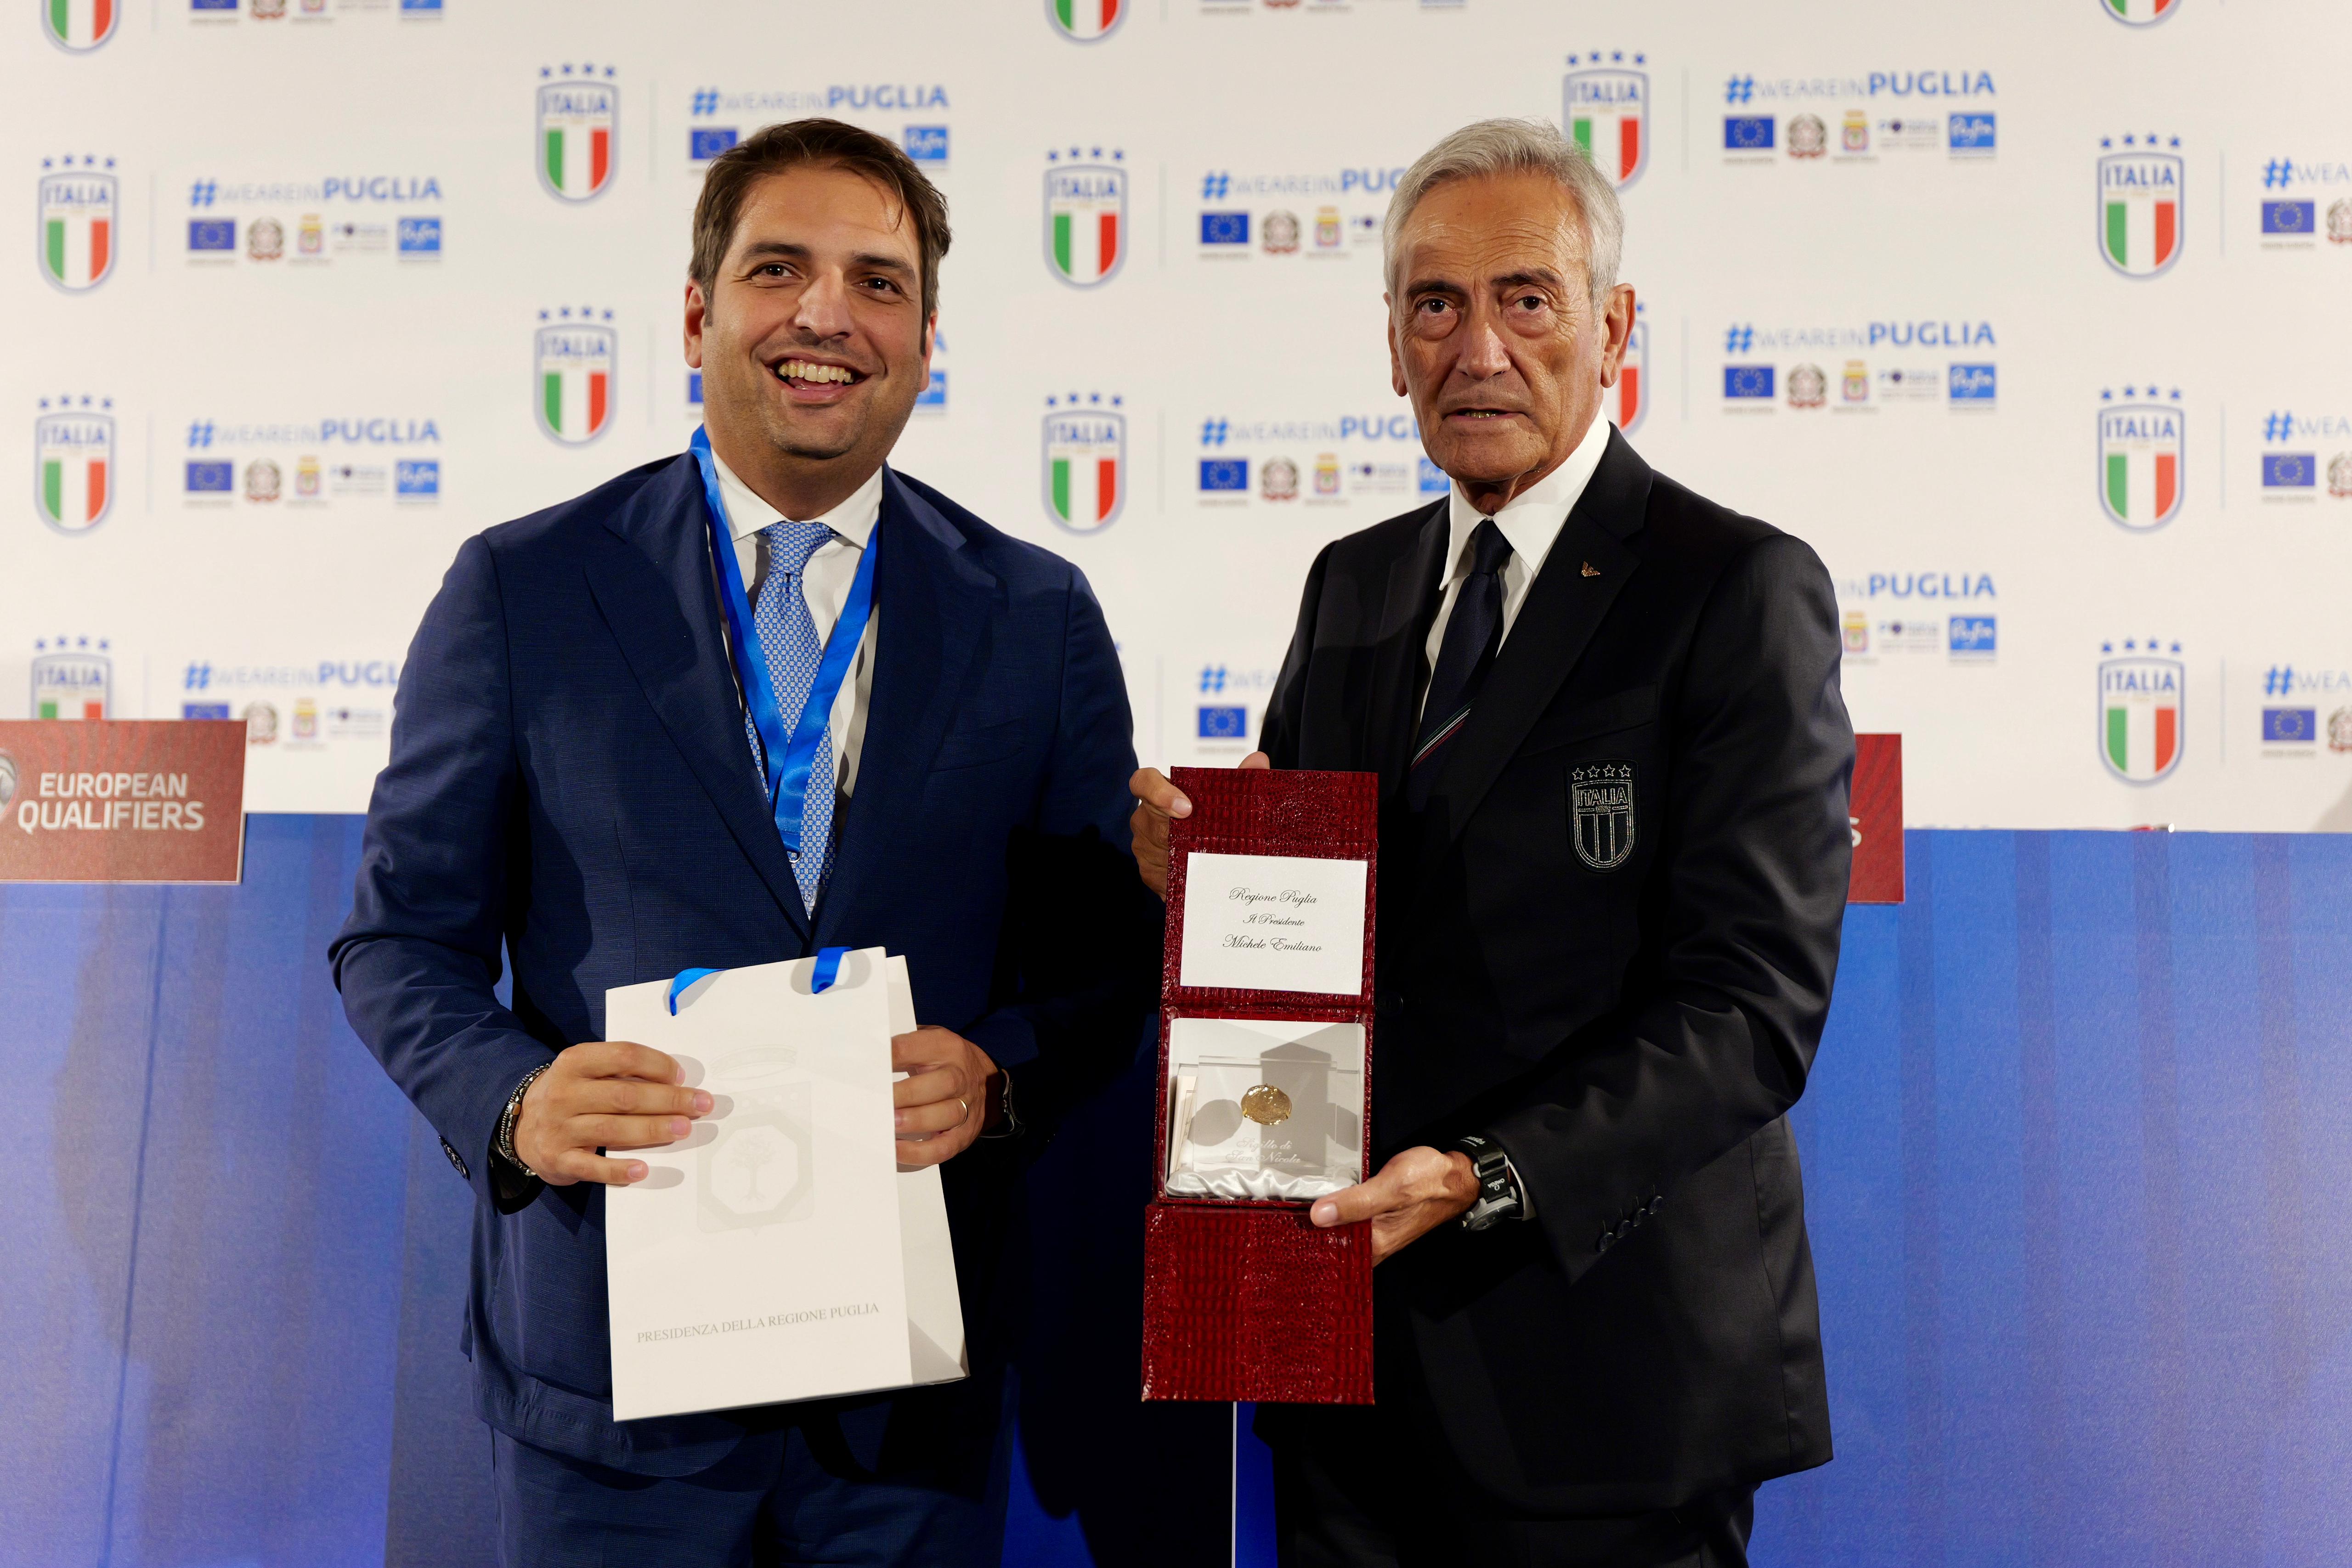 Galleria Sport, accoglienza e bellezza: la forza della Puglia al centro della partnership tra Regione e FIGC - Diapositiva 1 di 4